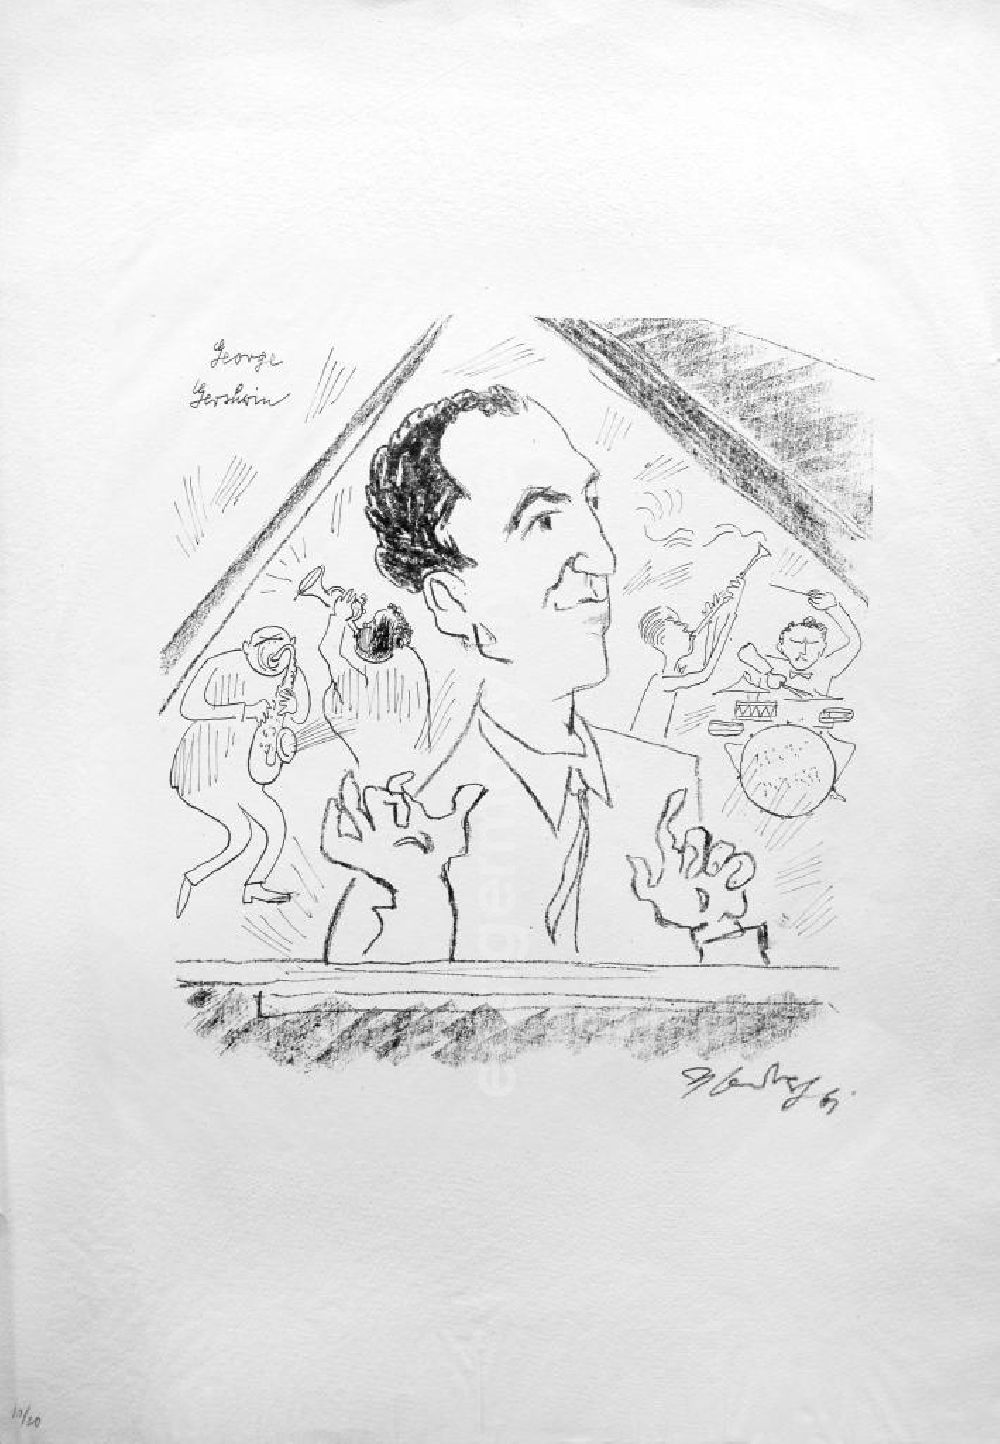 Berlin: Grafik von Herbert Sandberg übder den amerikanischen Komponist, Pianist und Dirigent George Gershwin (*26.09.1898 †11.07.1937) George Gershwin aus dem Jahr 1961, 29,7x30,9cm Lithographie (Kohle und Feder), handsigniert, 10/2